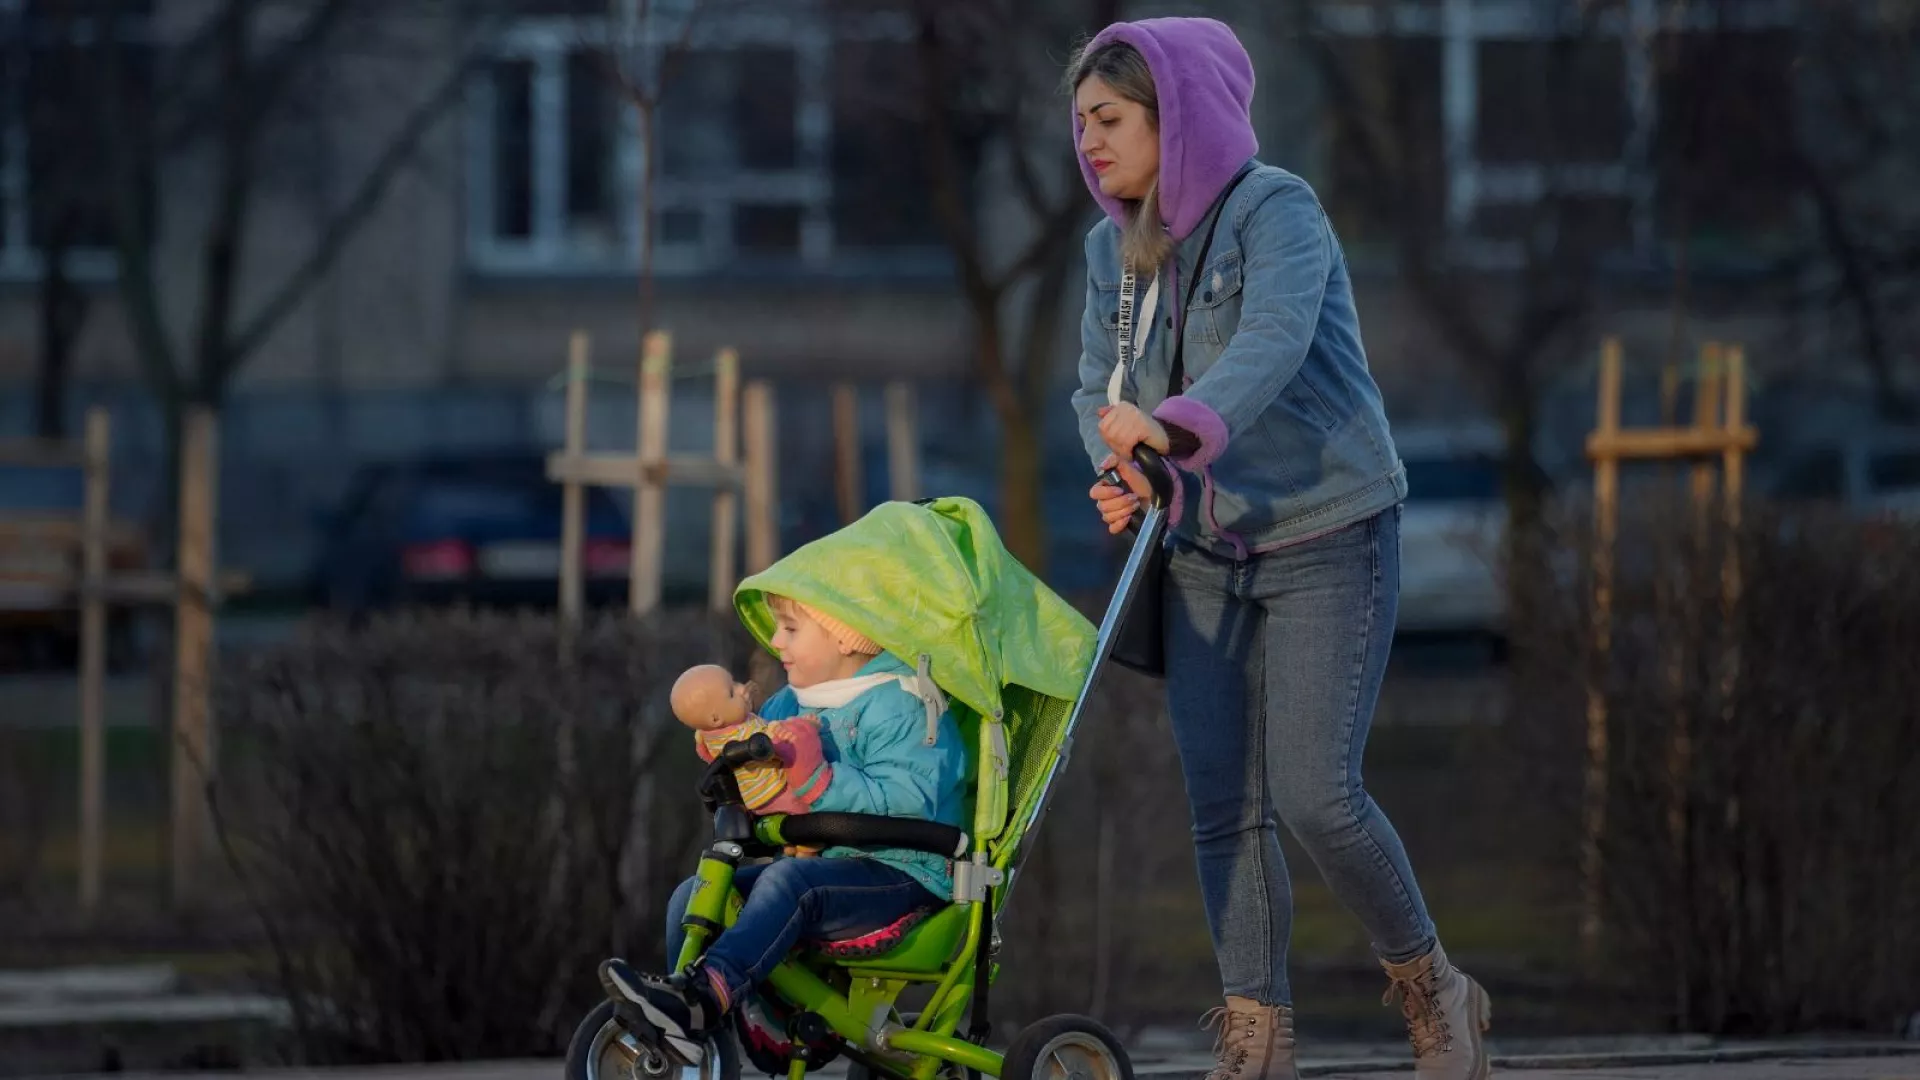 مادران مجرد در اروپا بیشتر در معرض خطر فقر و محرومیت اجتماعی قرار دارند